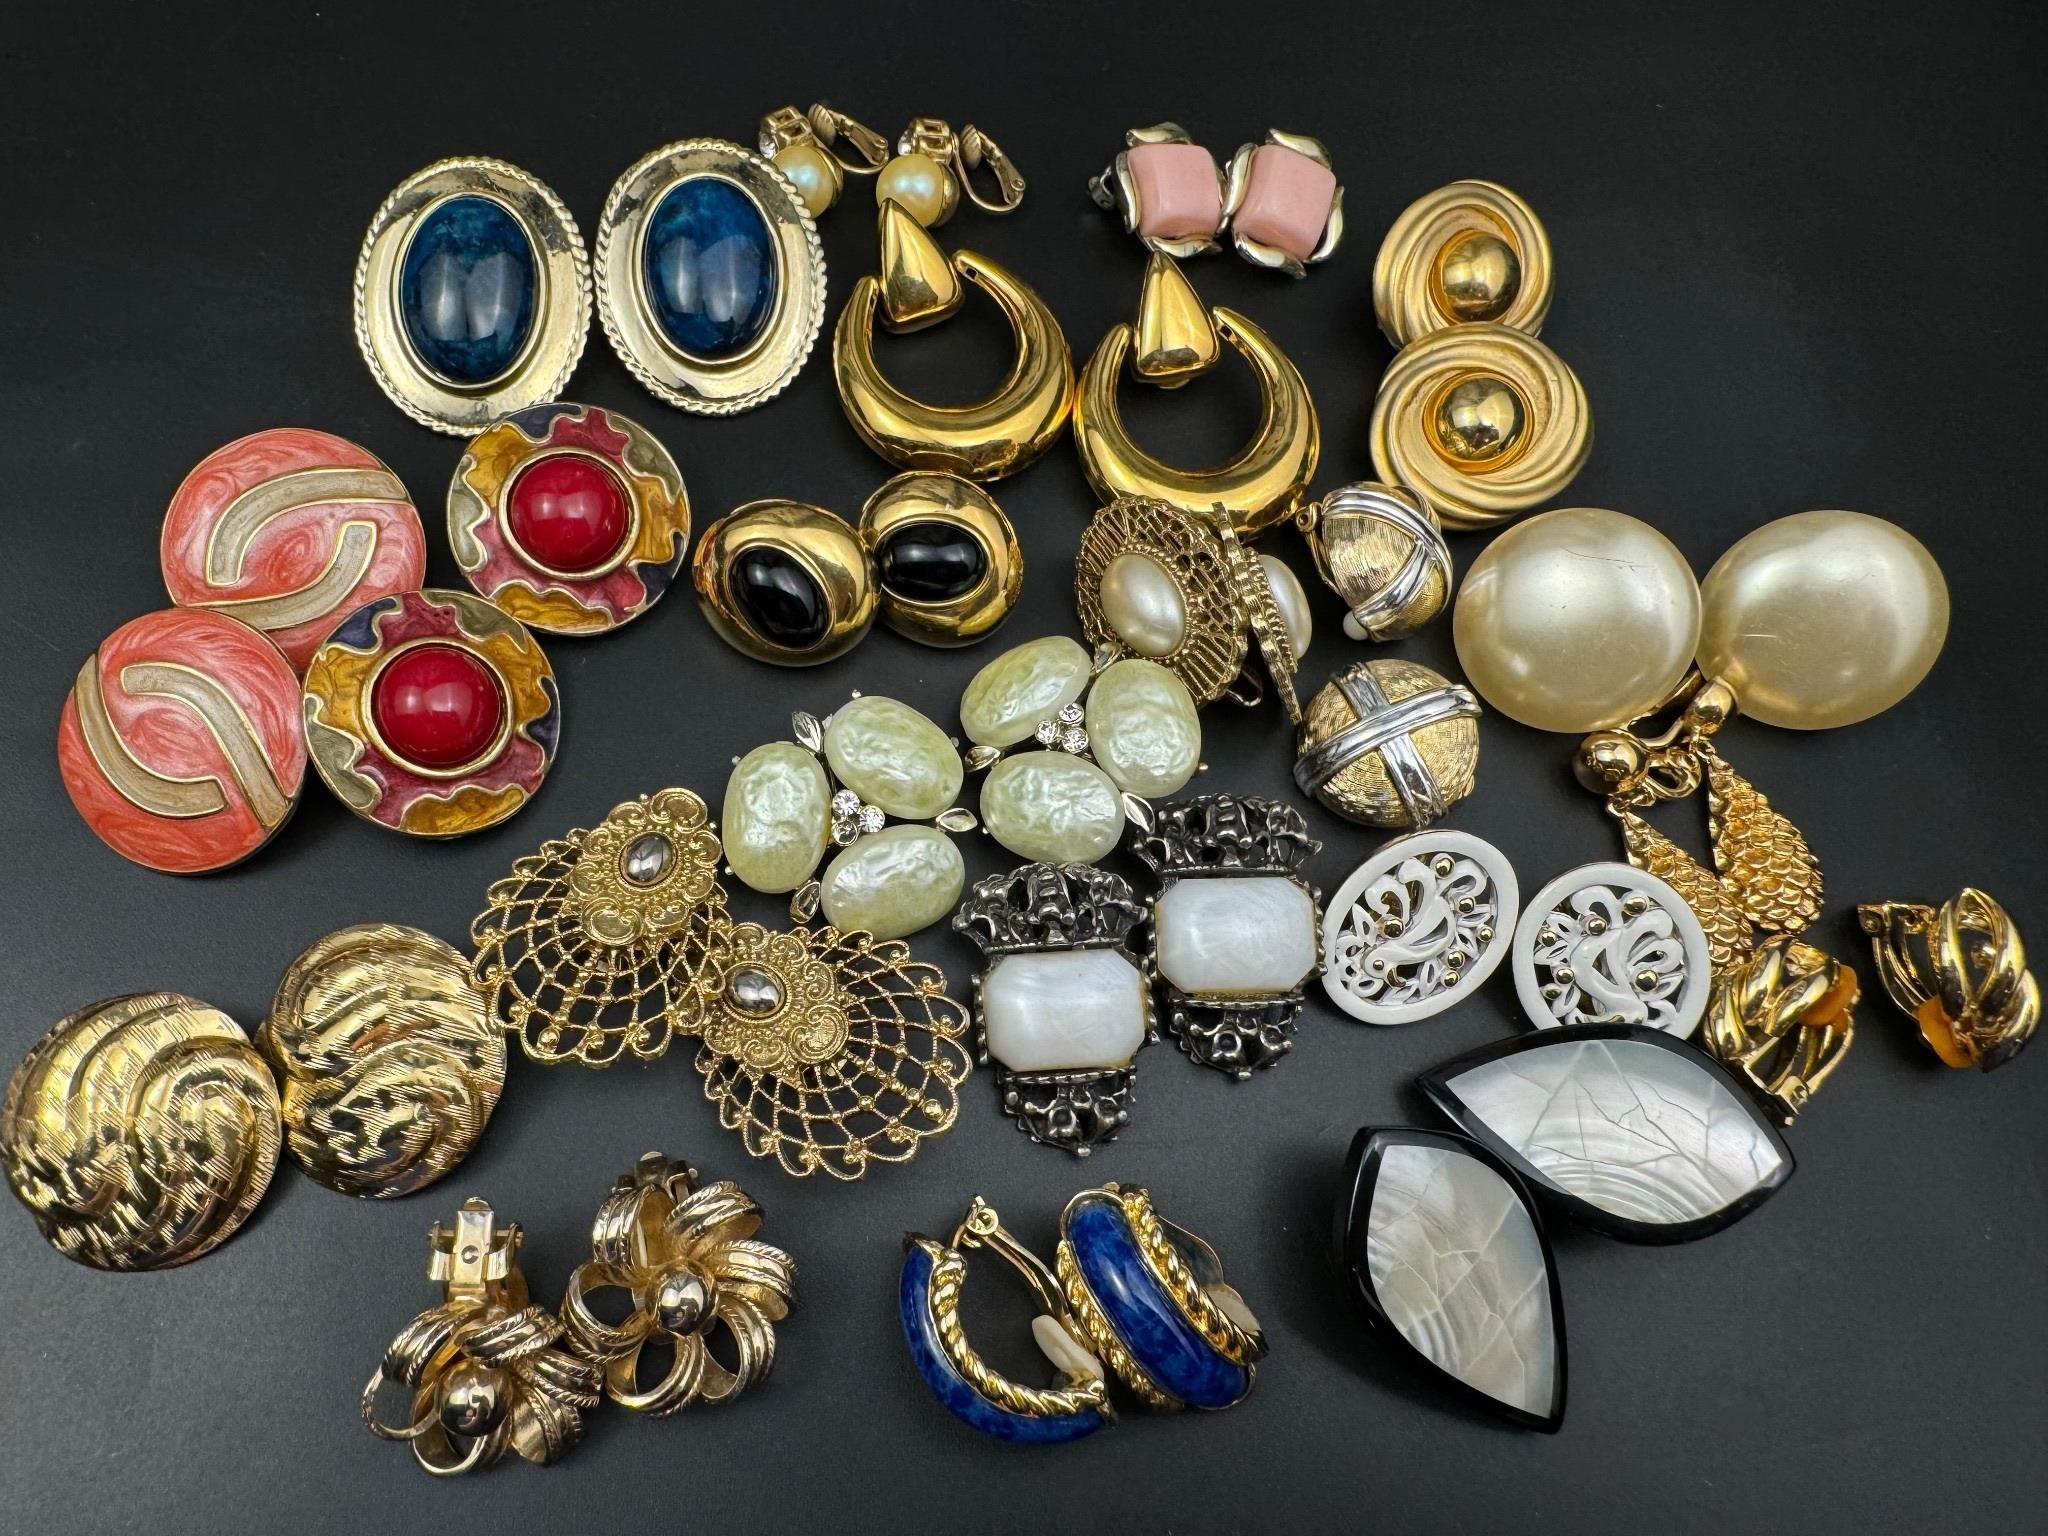 Vintage earrings jewelry lot